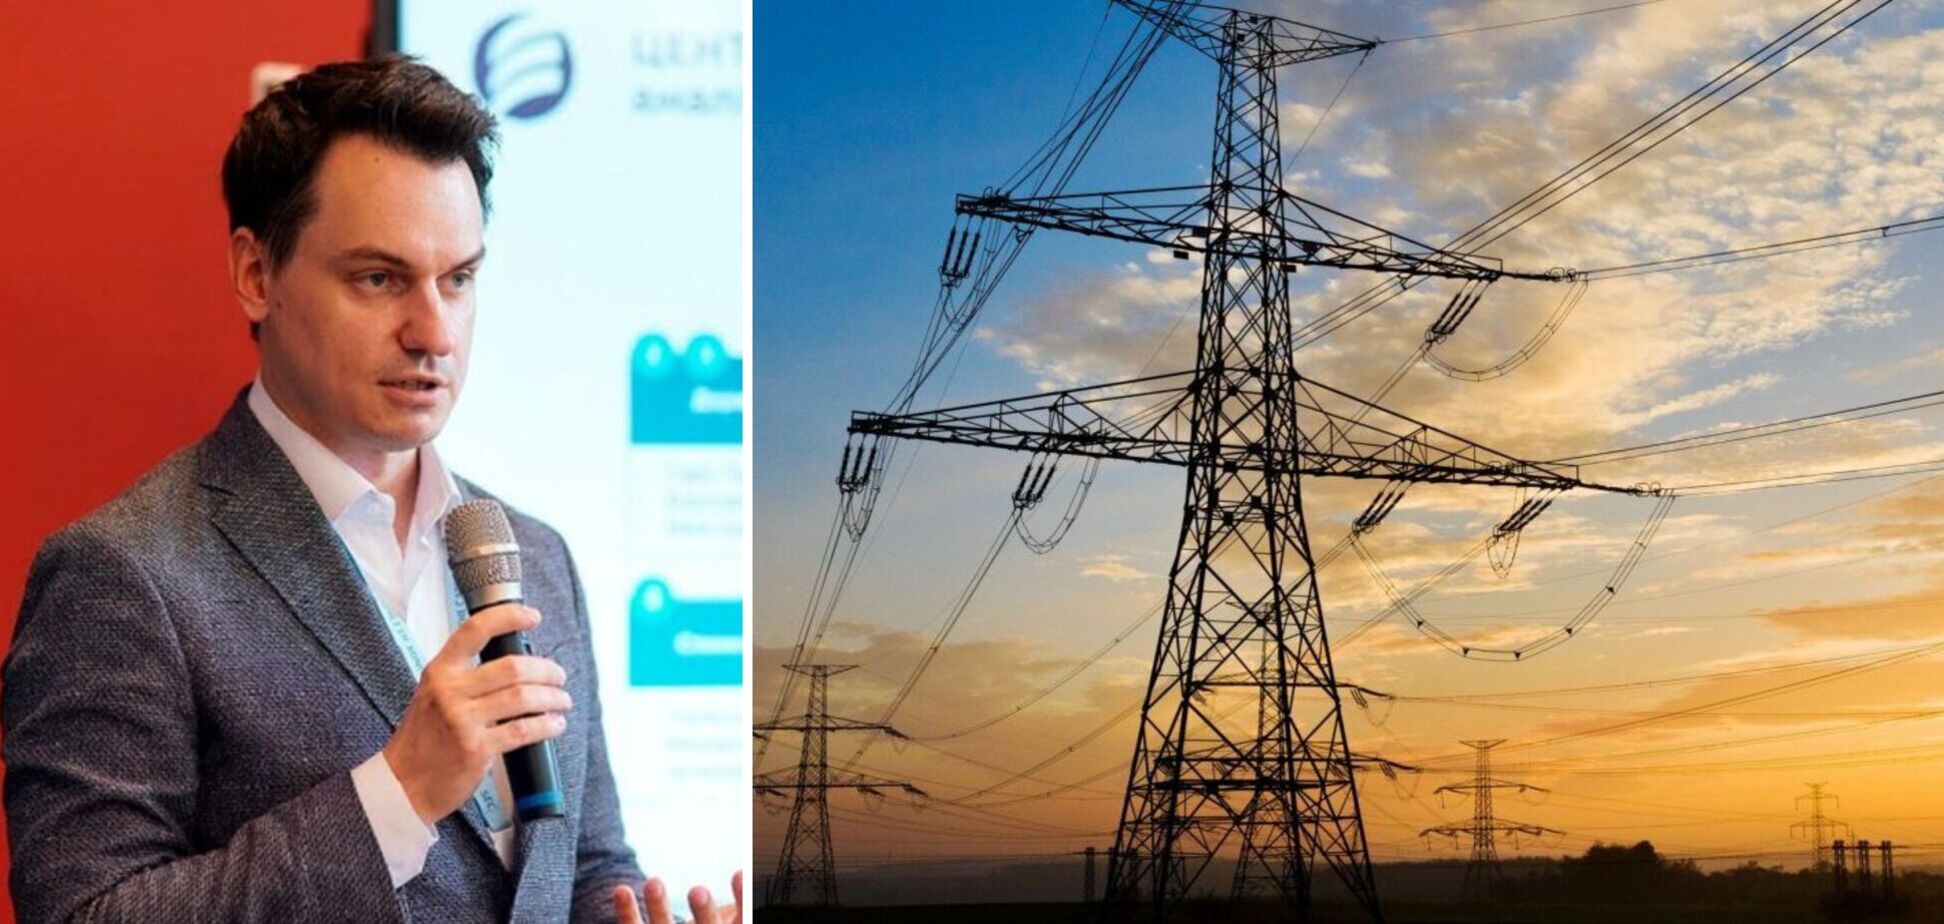 Експорт електроенергії працюватиме на відновлення української економіки та енергетики, – Кирило Криволап